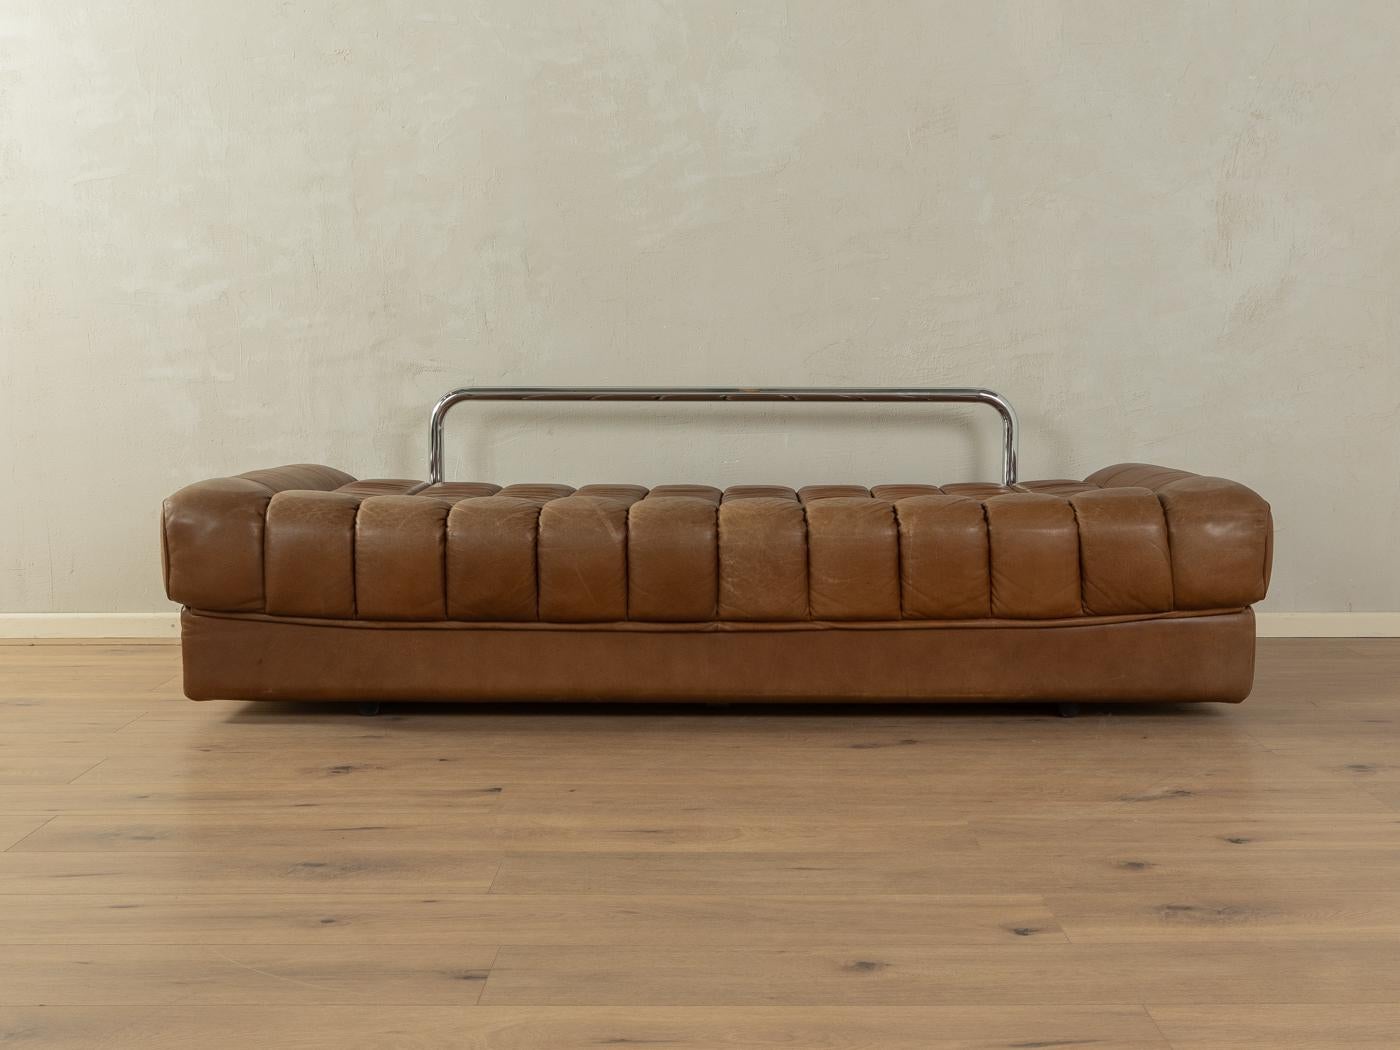  Convertible sofa, de Sede, DS-85  2